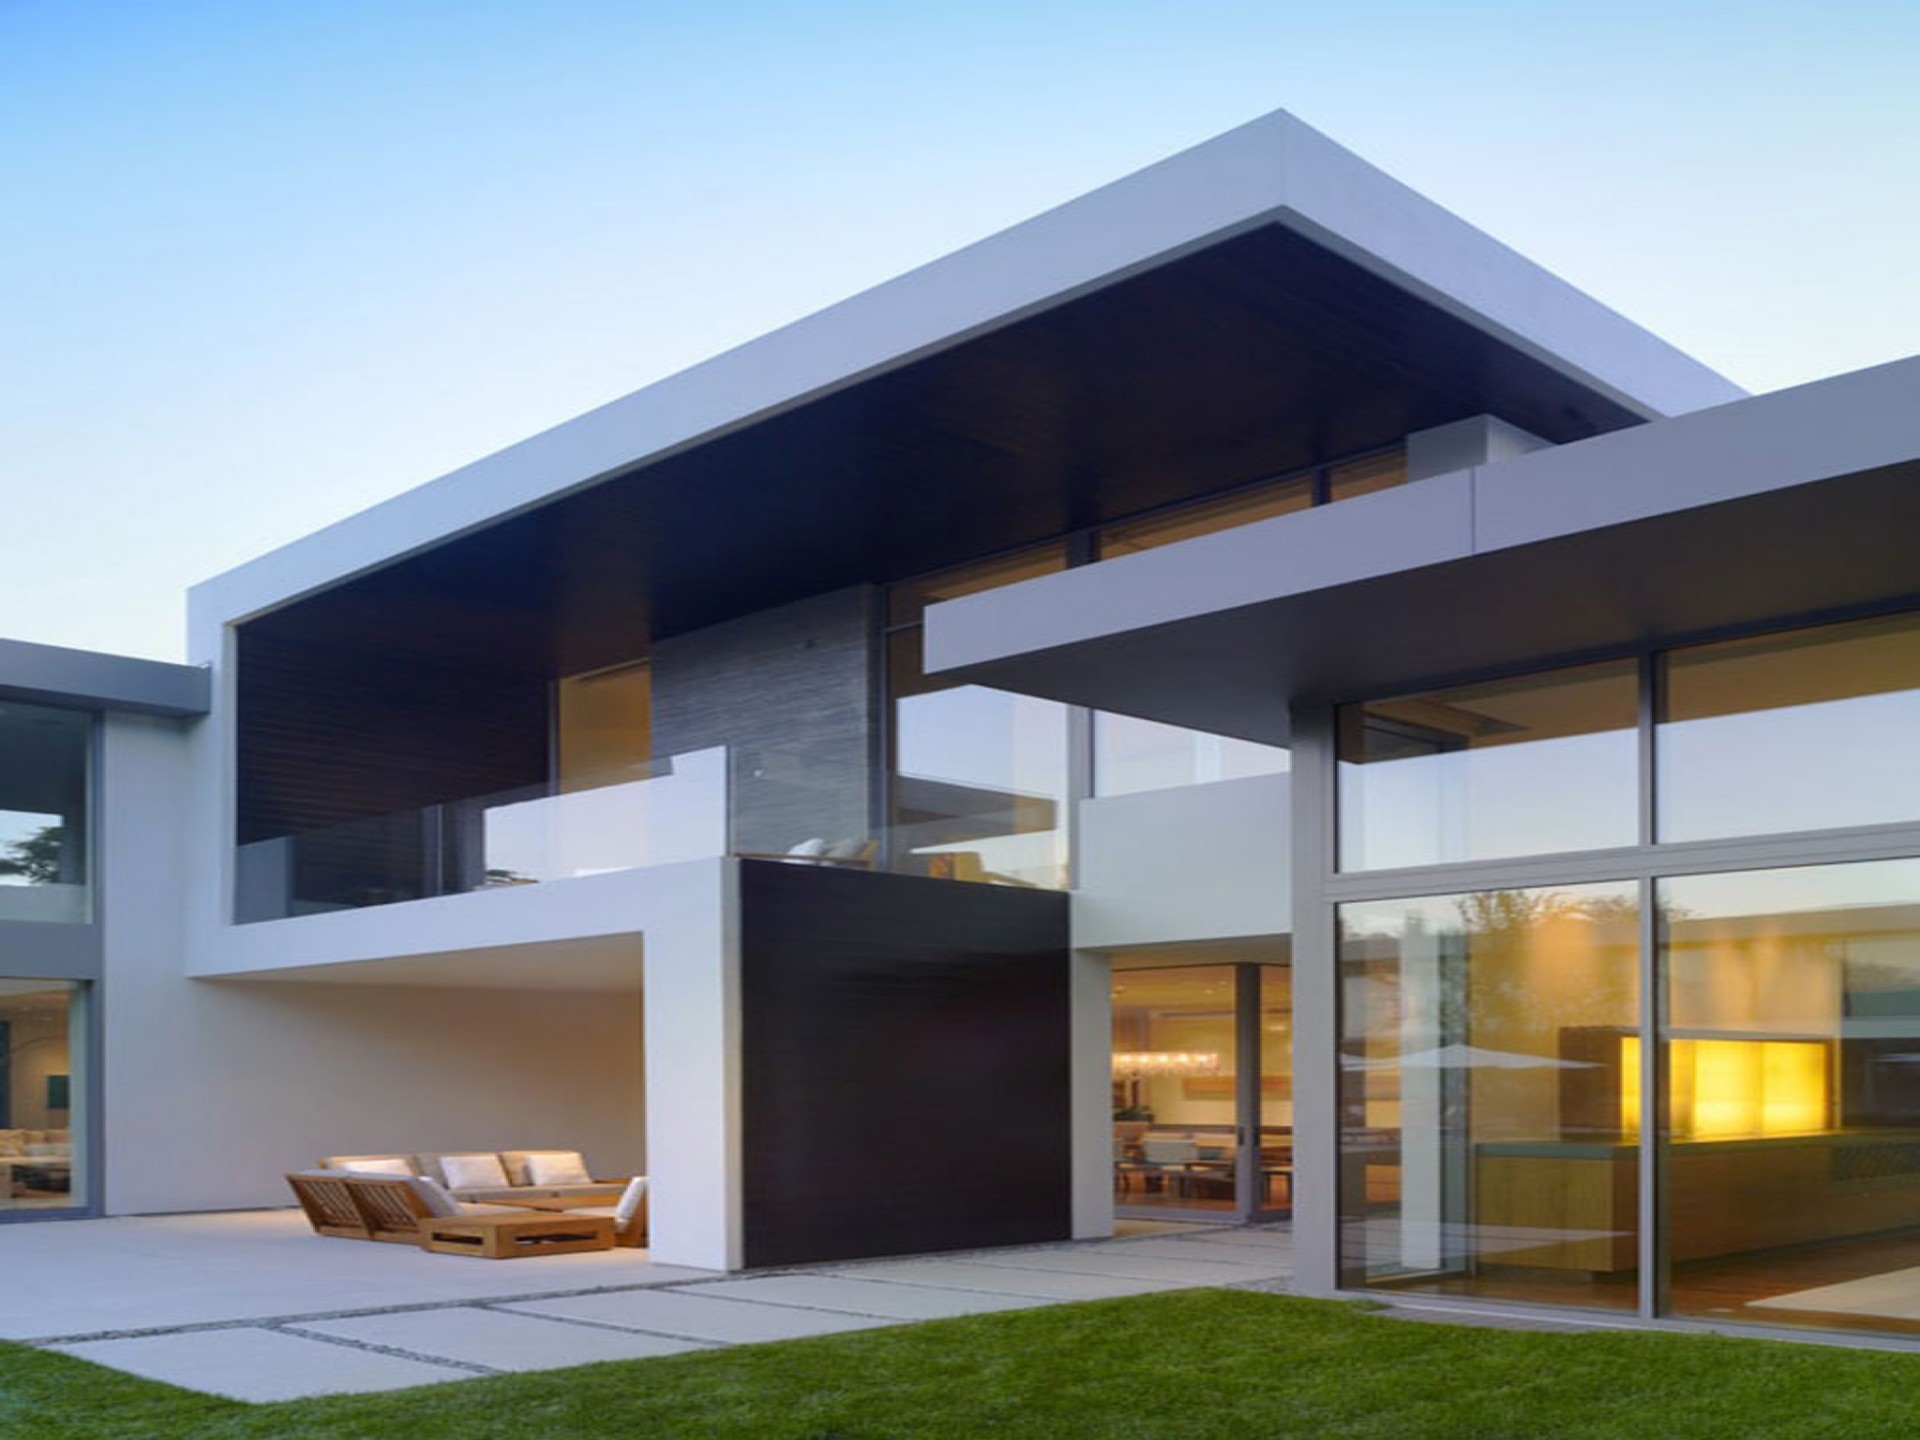 Fresh Minimalist Architecture Mies Van Der Rohe - Urban Modern House Design - HD Wallpaper 